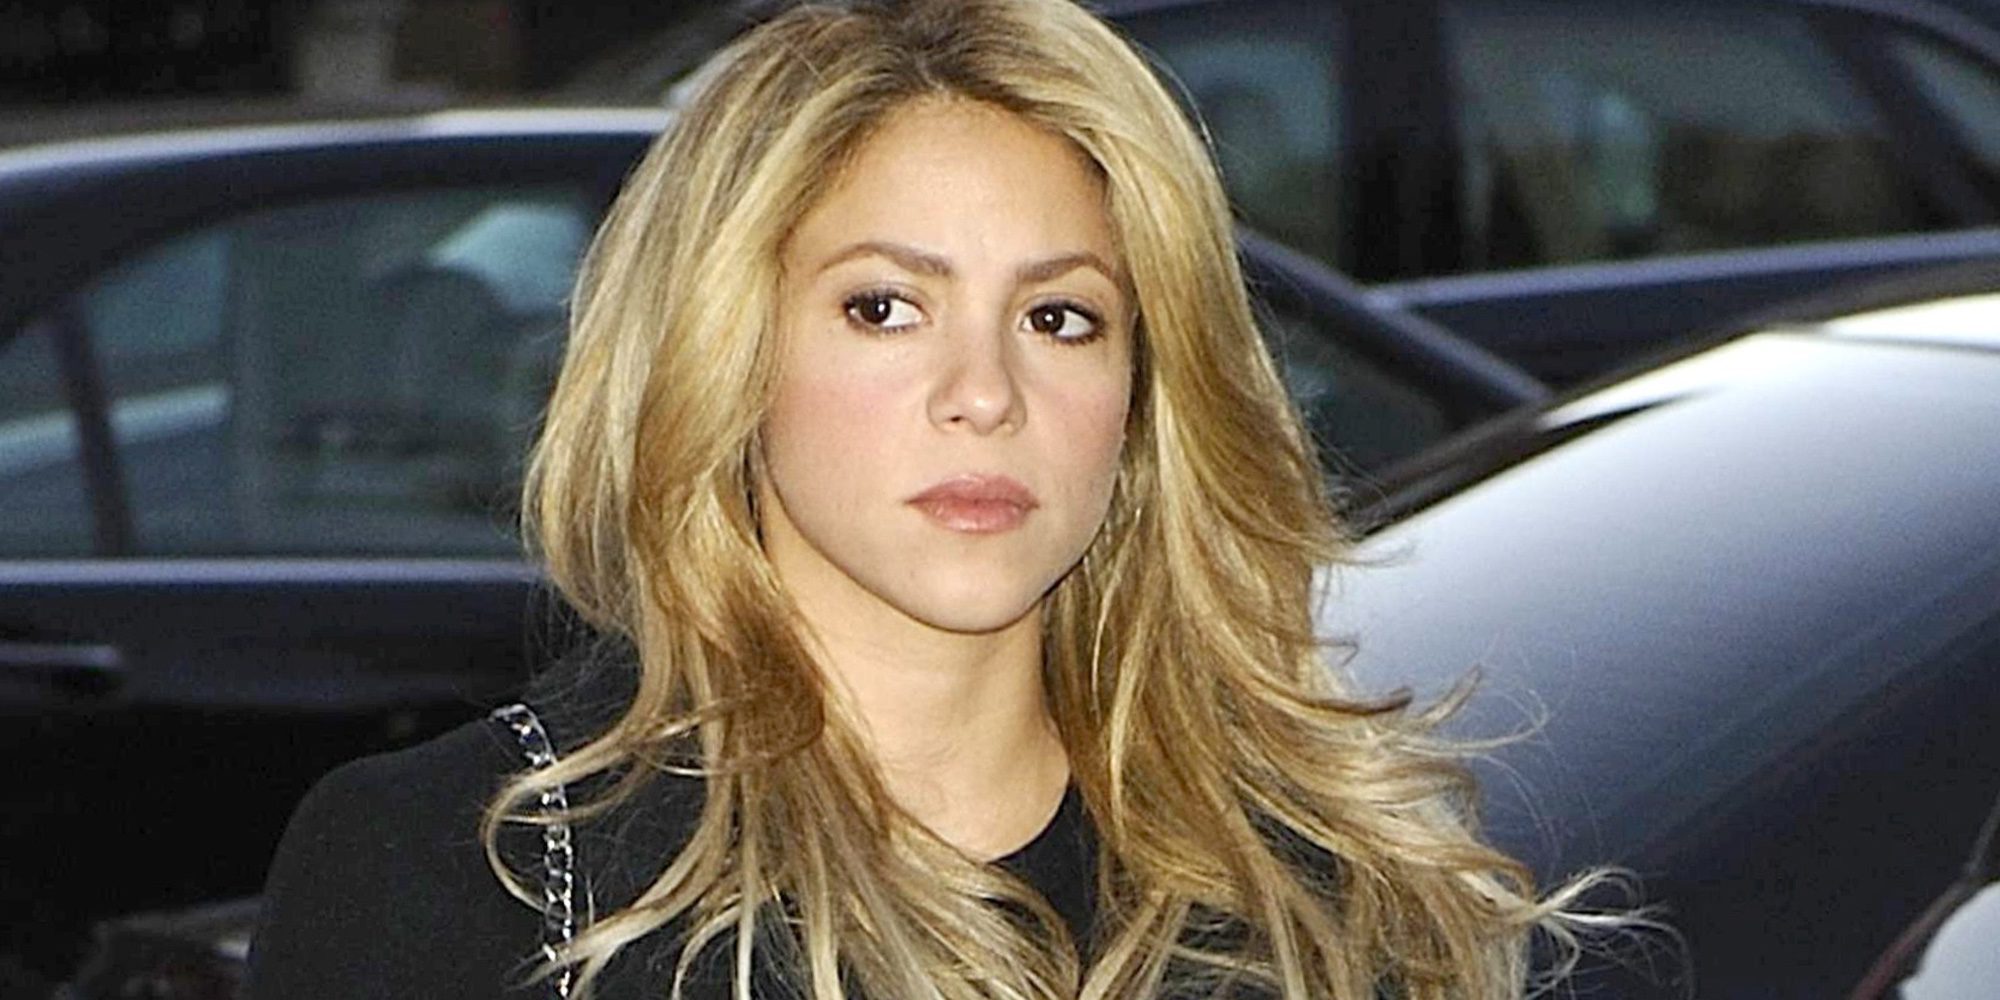 Shakira se suma a la lista de involucrados en el escándalo de los Paradise Papers